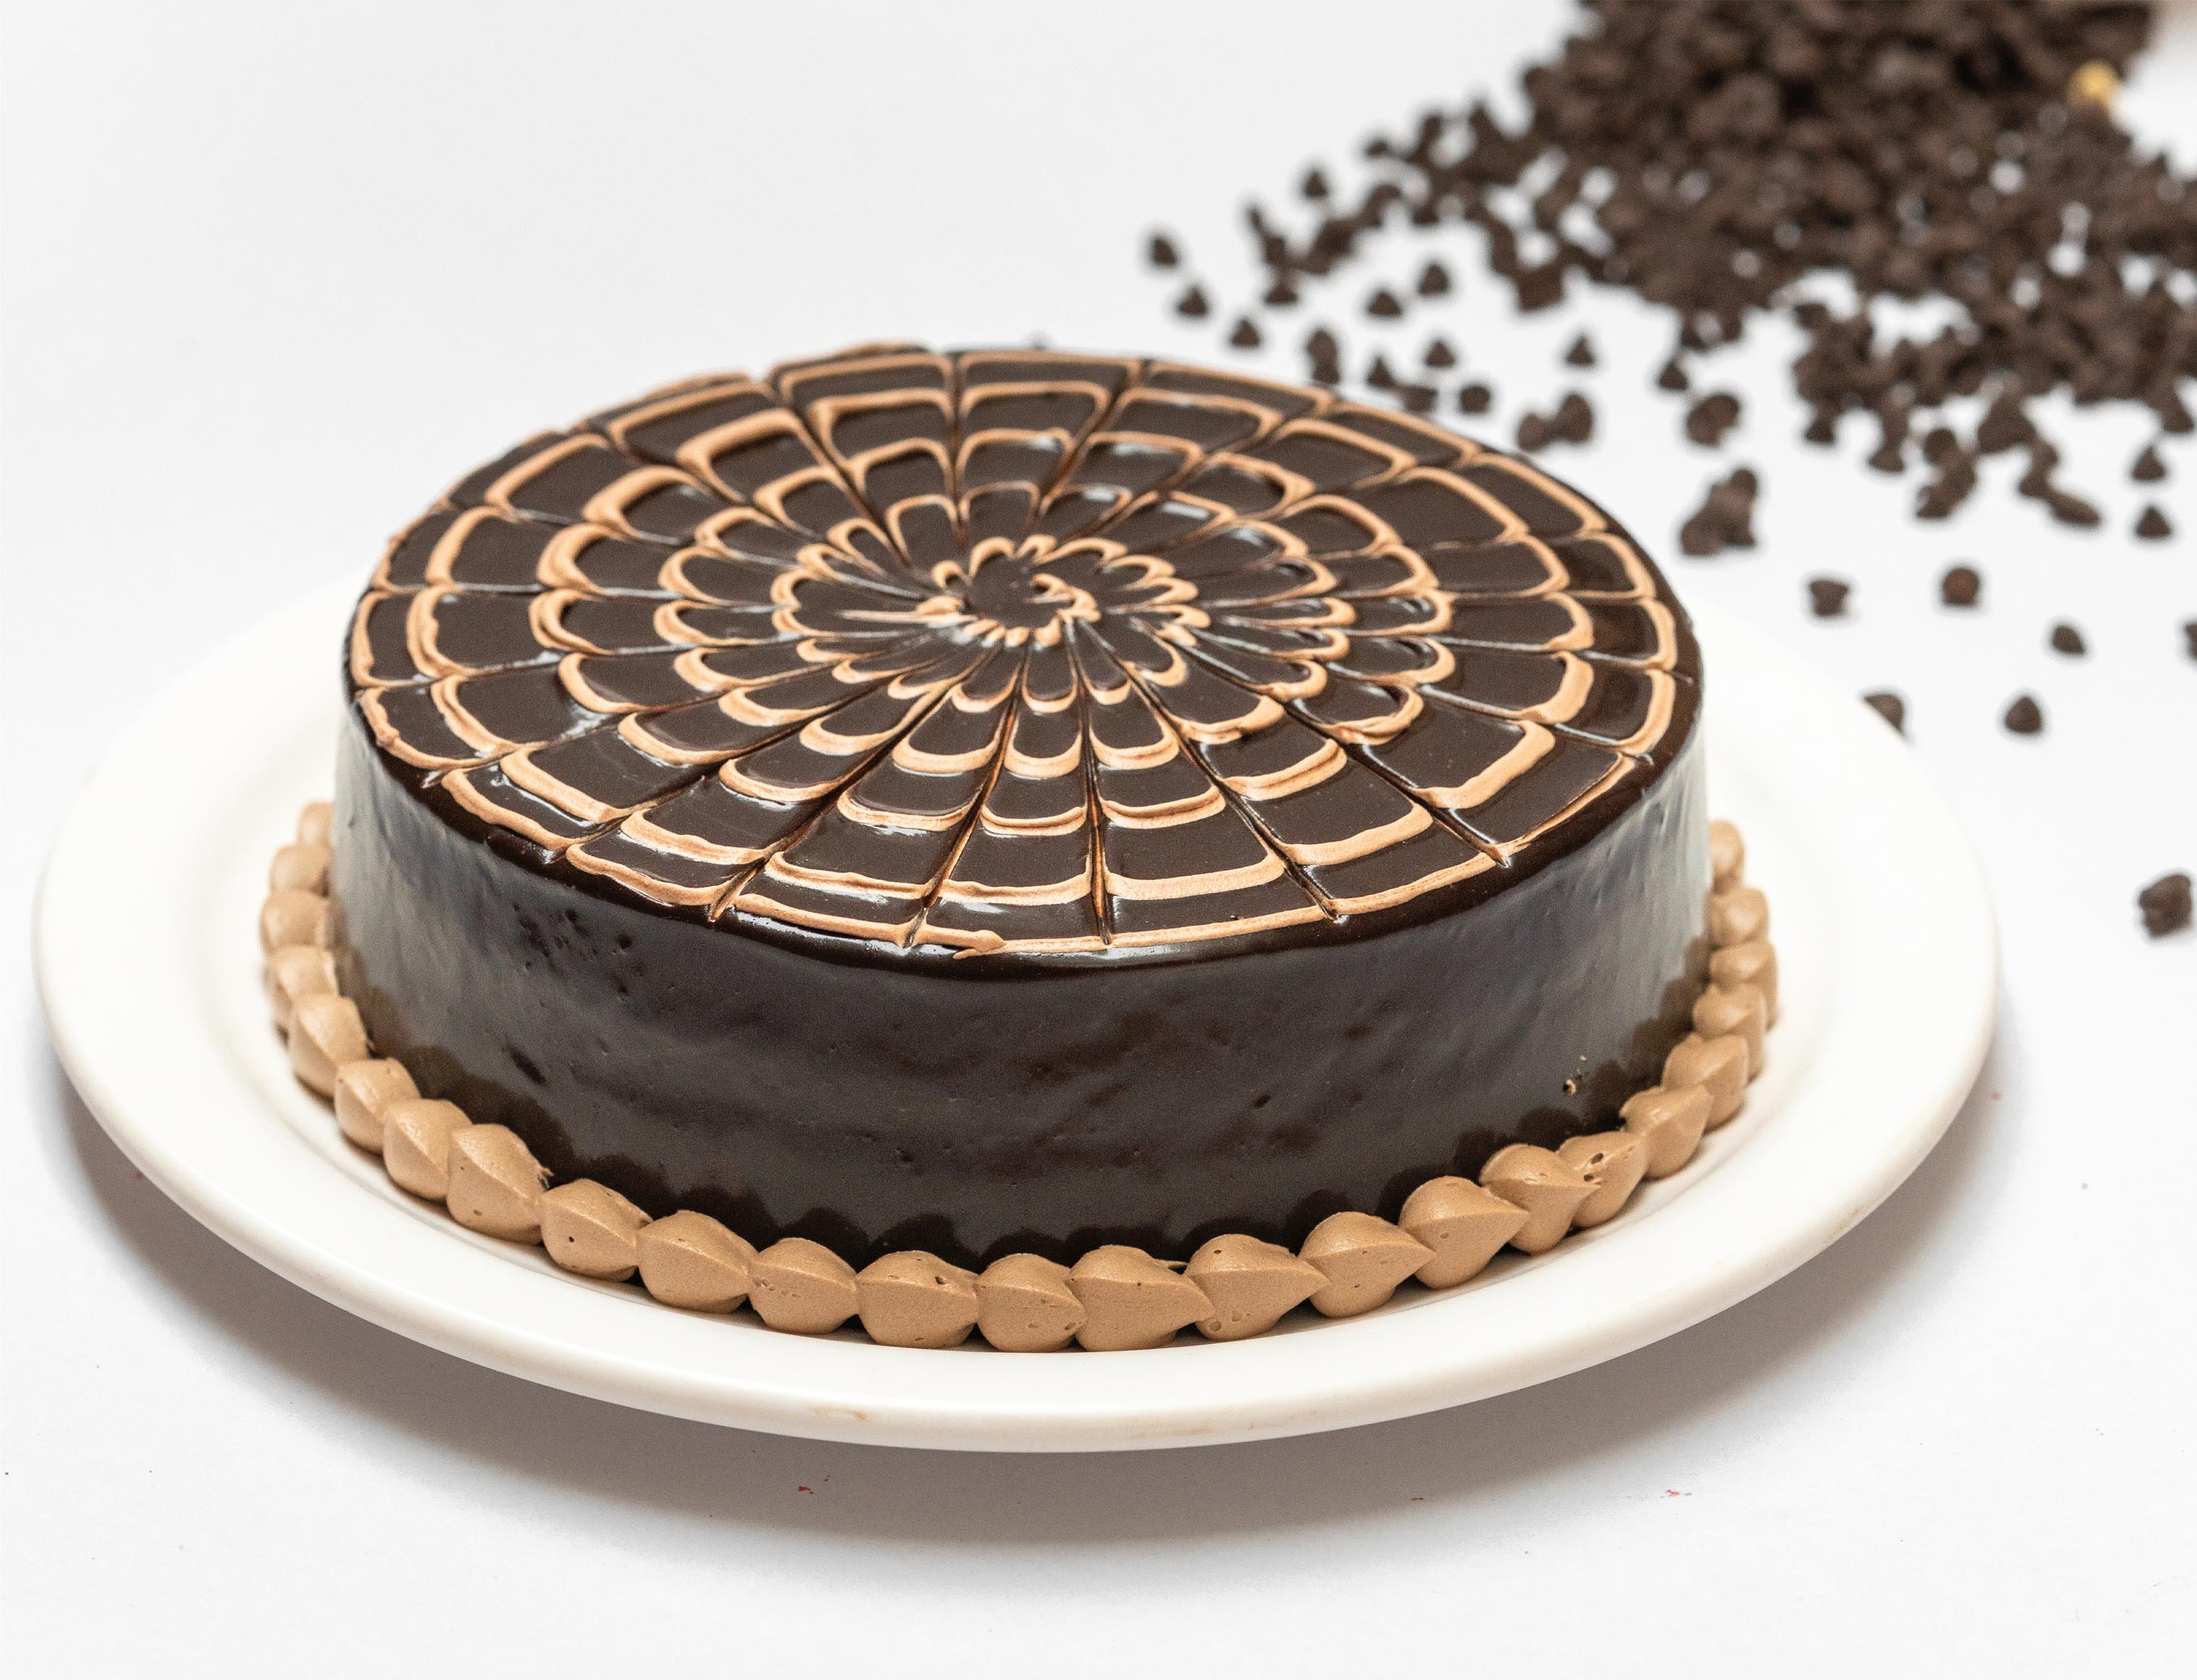 Chocolate Sprinkle Cake Design | No Egg No Oven Pure veg cake | Homemade  cake - YouTube